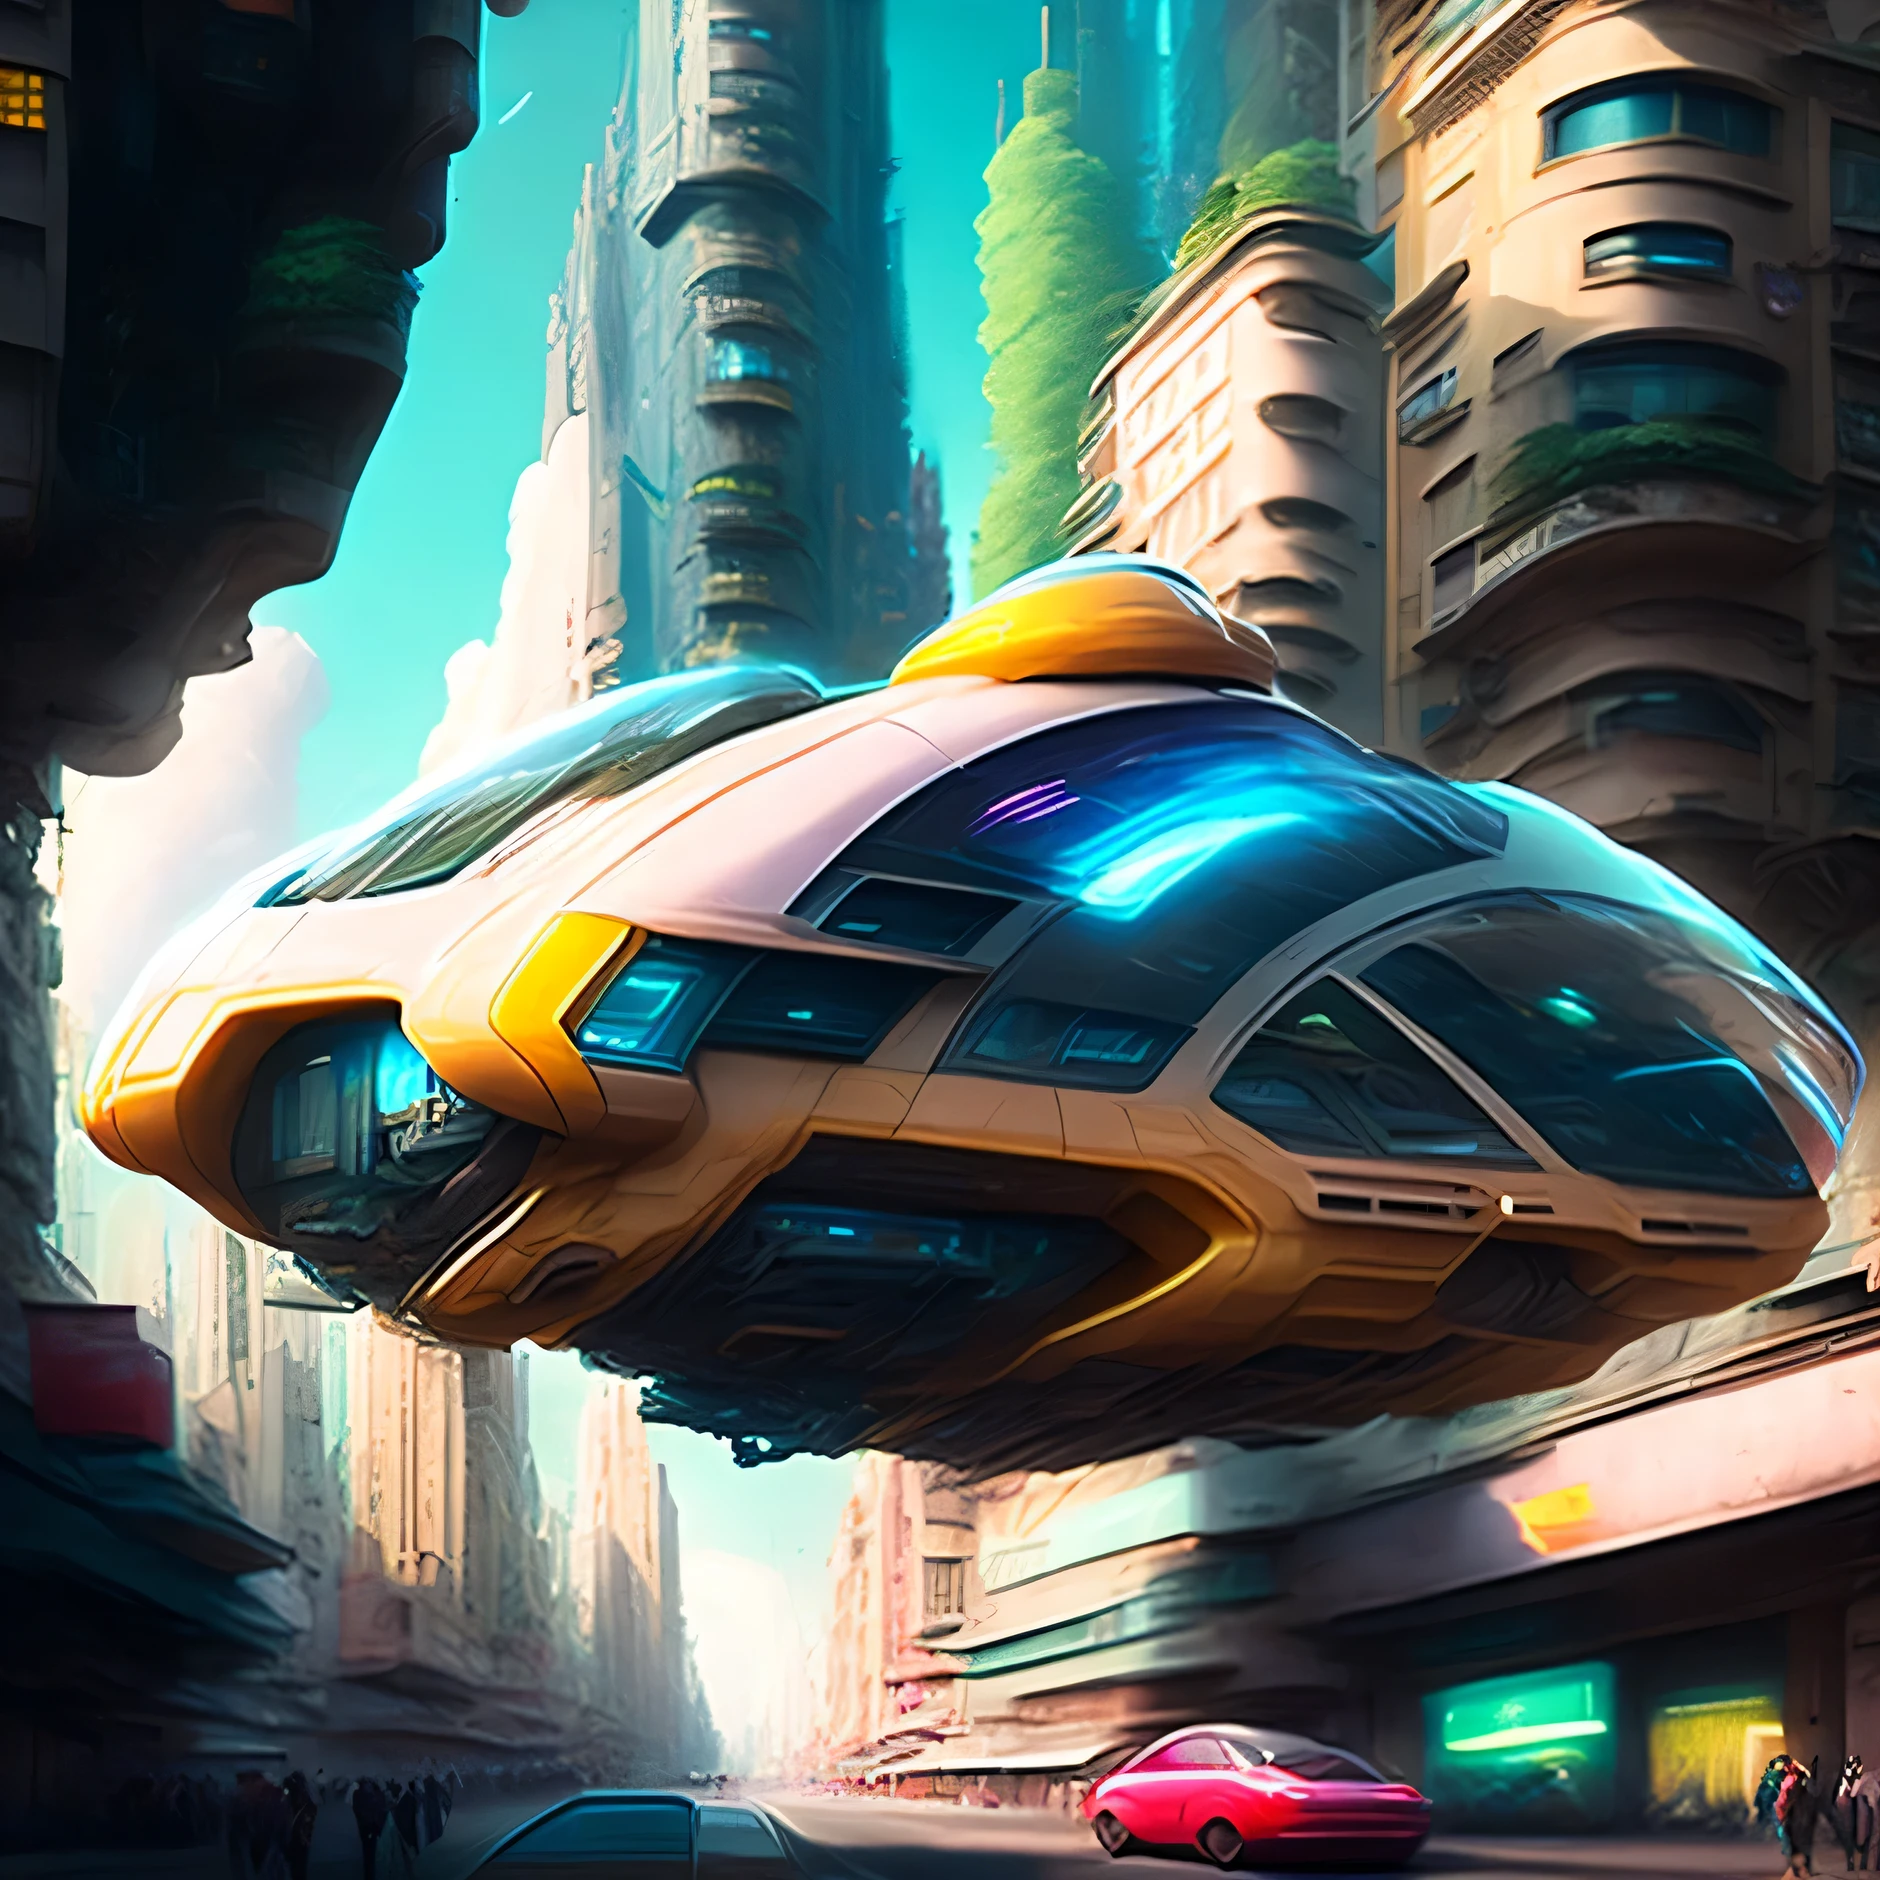 Hover Car в мегаполисе будущего, реалистичный, Кинематографический, киберпанк, HOVERмашина STYLE, машина, летающий, воздух,город, Улица, THROUGH THE воздух, Вождение, высокий, здание, лыжи - фи, городSCAPE